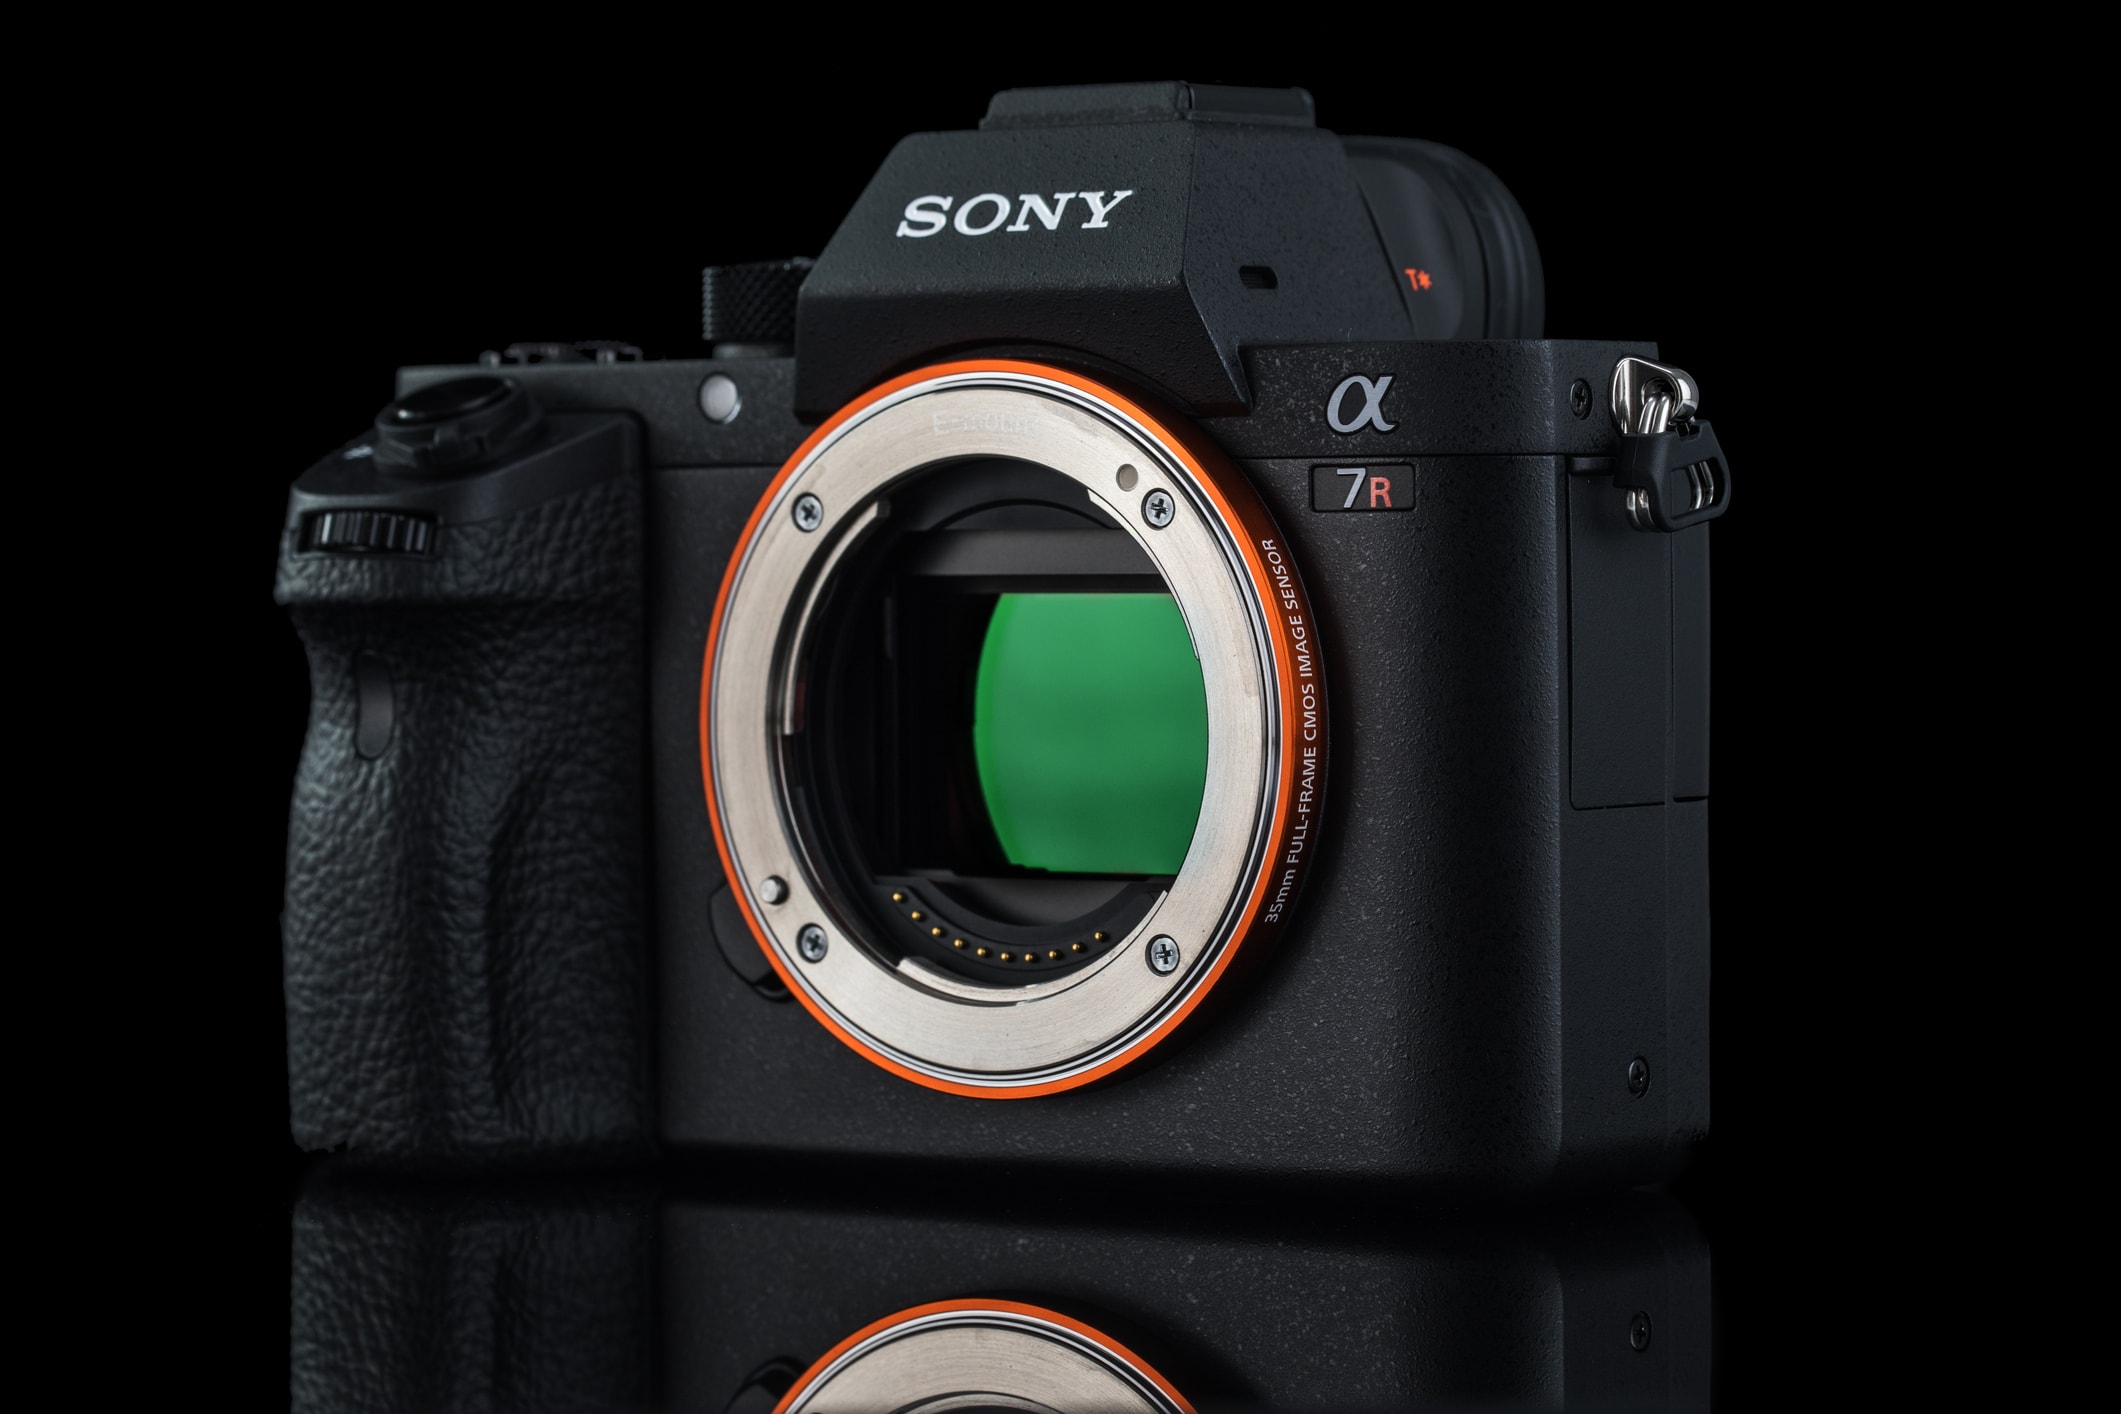 sony dominates camera market image 